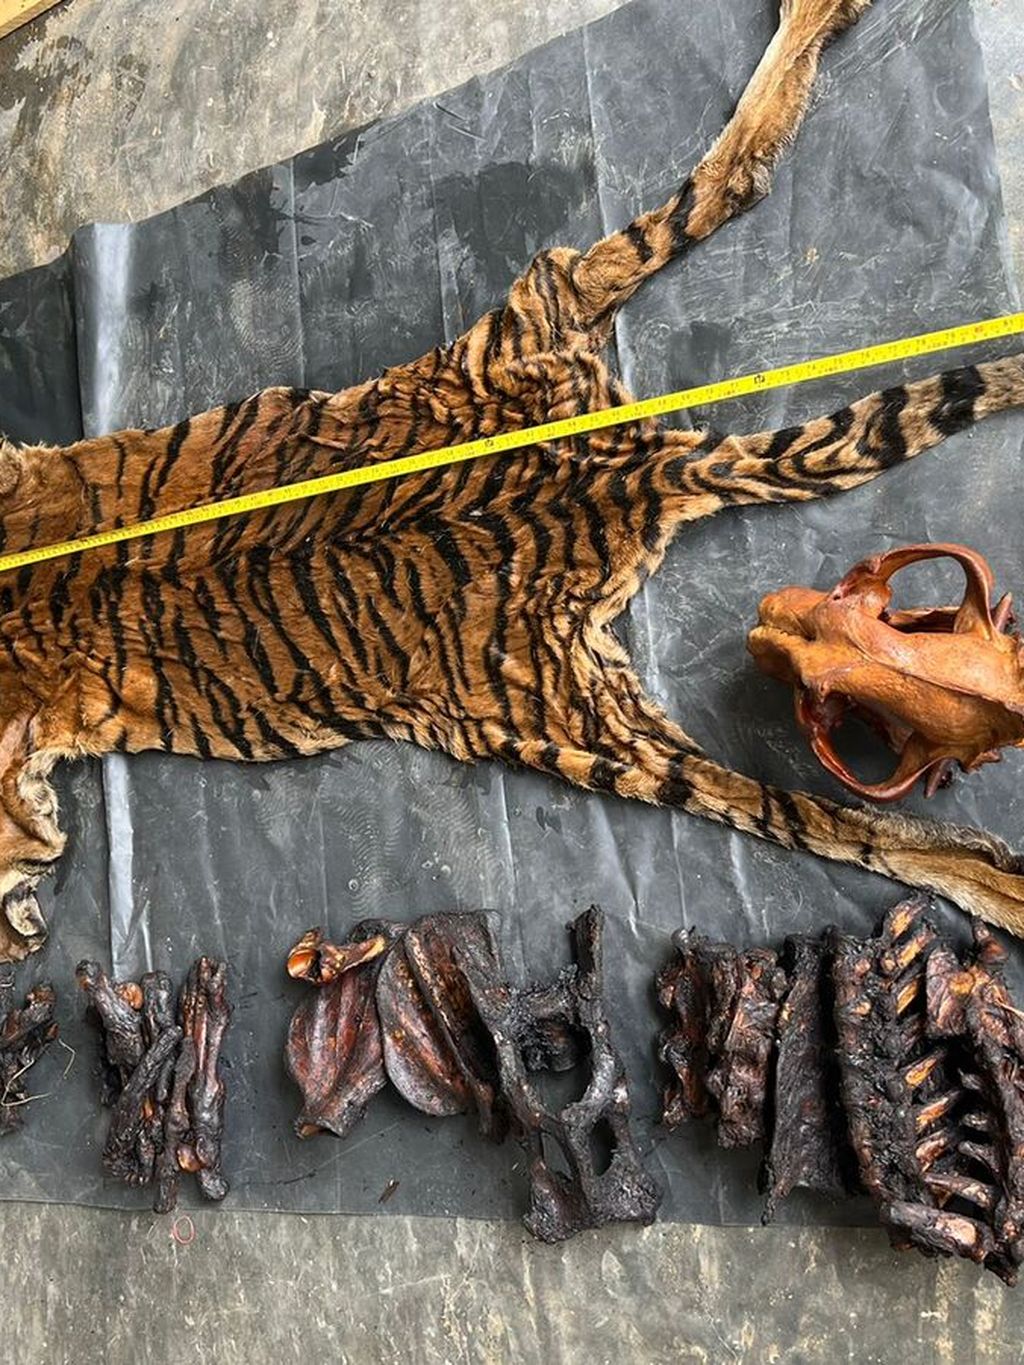 Barang bukti kulit harimau yang disita dari Ahmadi dan Supriadi, terduga pelaku perdagangan satwa lindung. Keduanya ditangkap dalam operasi perdagangan satwa lindung oleh petugas Balai Pengamanan dan Penegakan Hukum Lingkungan Hidup dan Kehutanan Wilayah Sumatera.